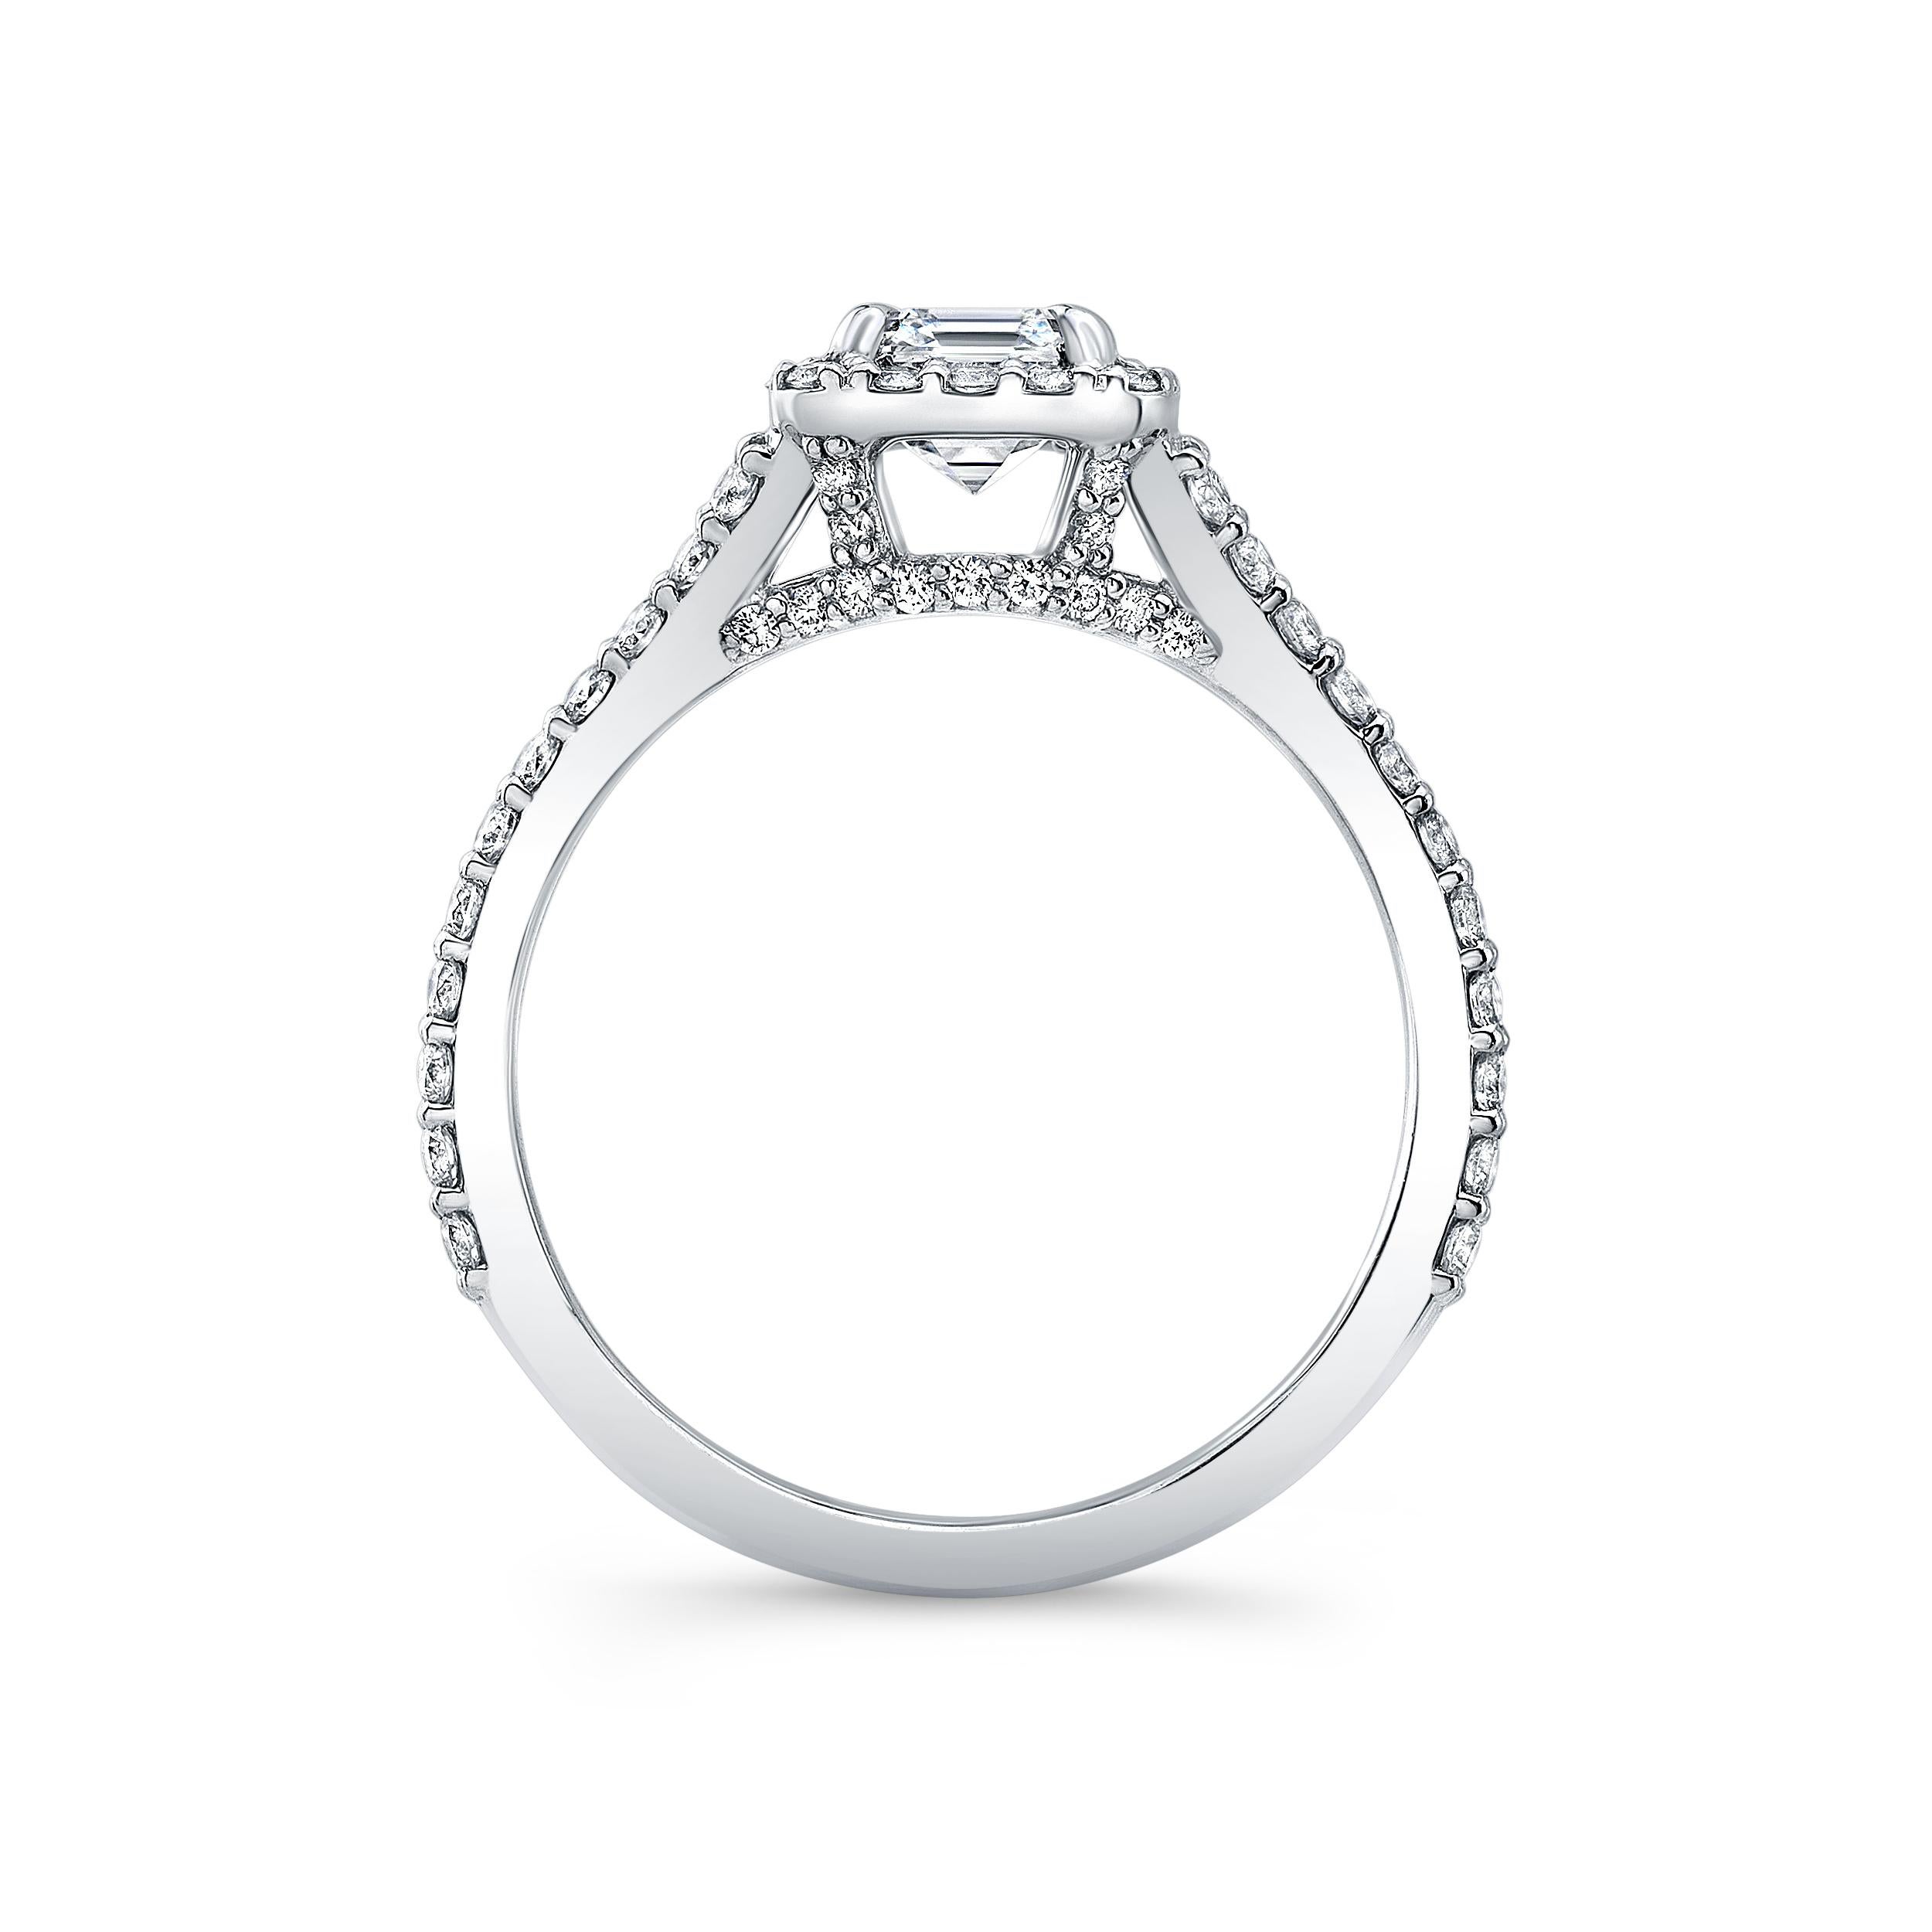 Diamant im Asscher-Schliff mit 0,93 Karat, gefasst in einem Pavé-Ring mit geteiltem Schaft aus 18 Karat Weißgold.
Ungefähre Farbe F-G Klarheit SI2
Pflasterdiamanten 0,71 Gesamtgewicht
AGS-zertifiziert
6,5 Ringgröße